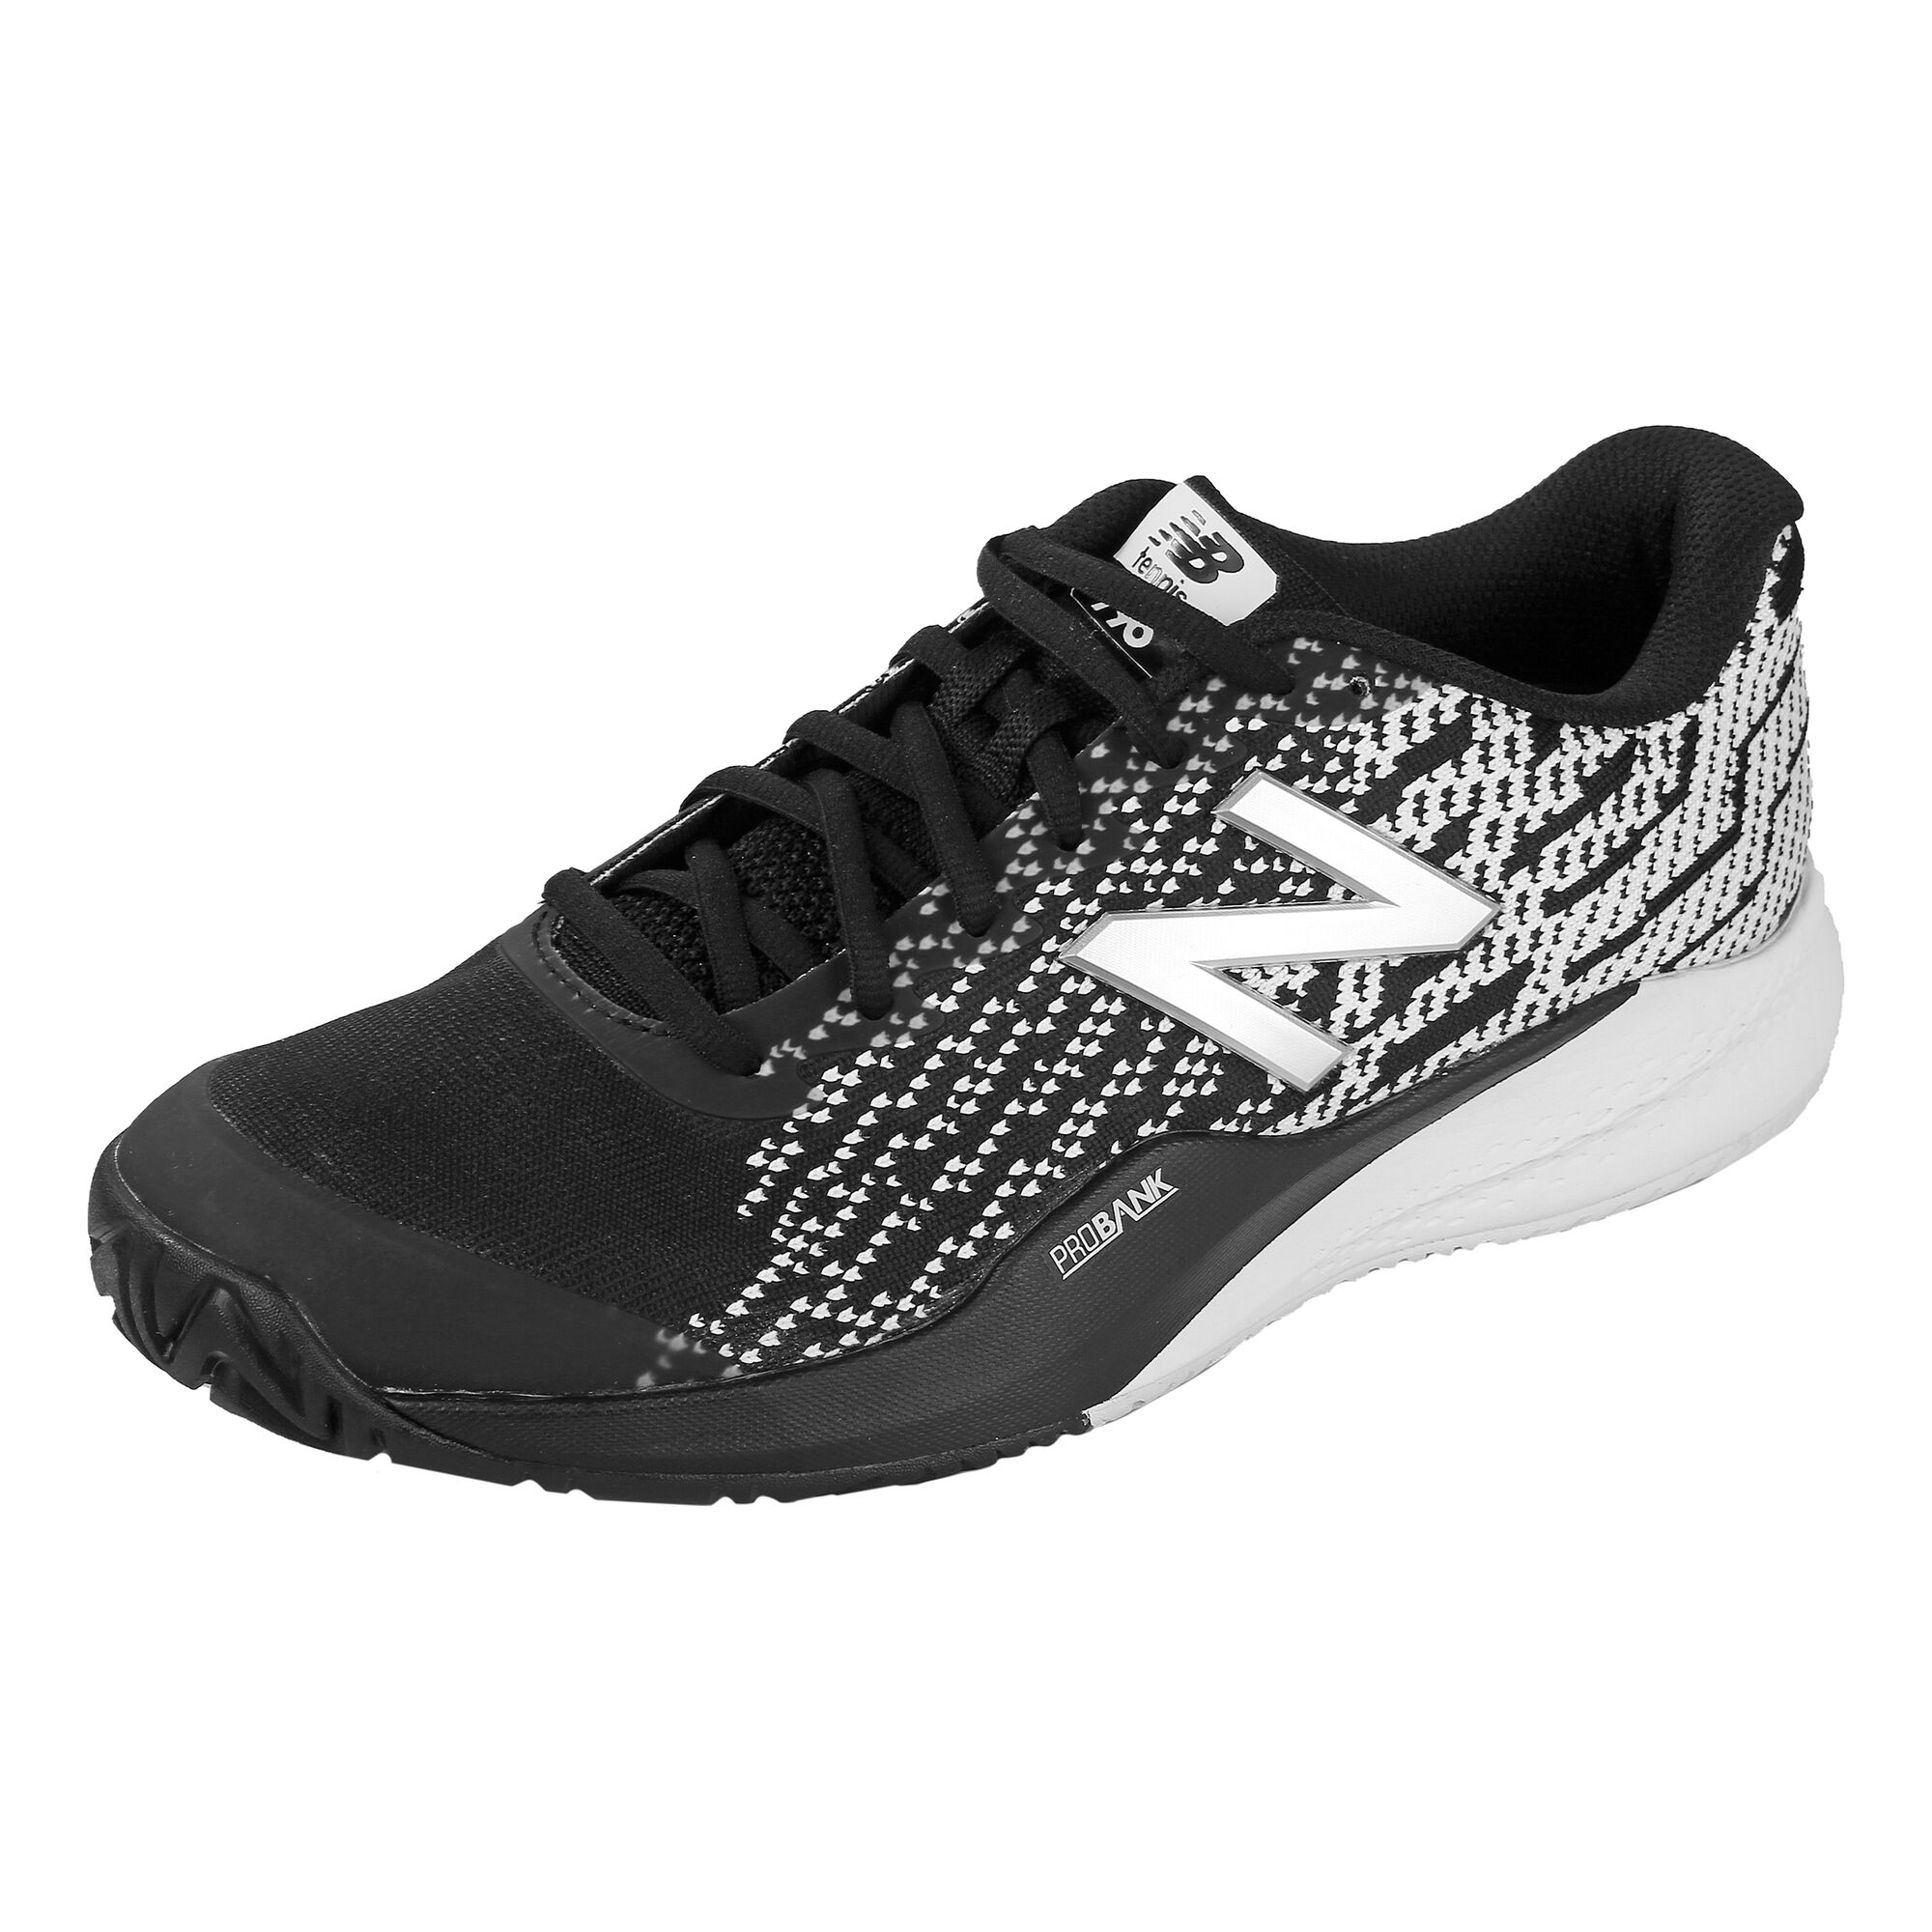 buy New Balance 996 V3 All Court Shoe Men - Black, White online ...